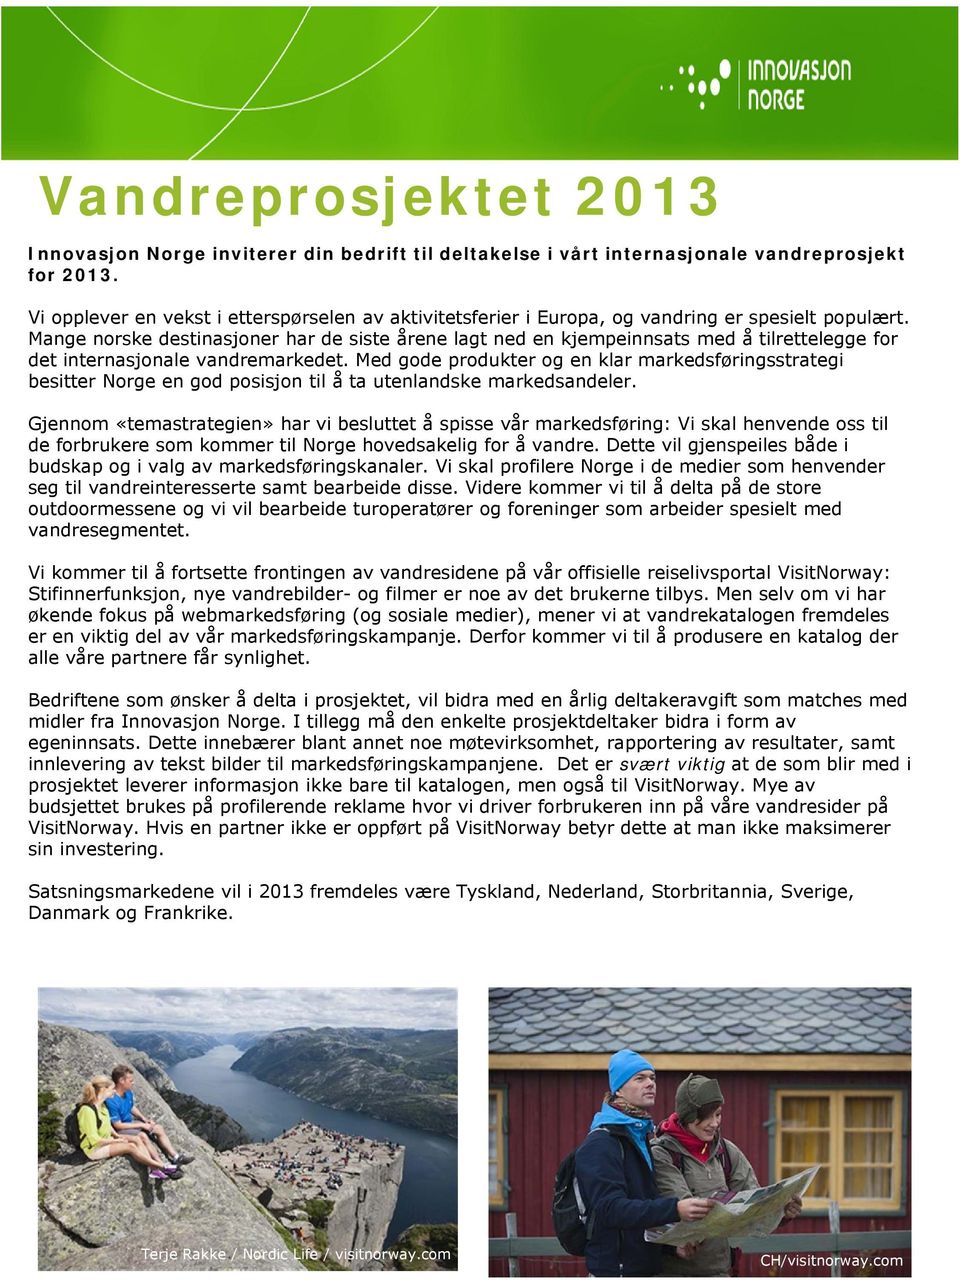 Mange norske destinasjoner har de siste årene lagt ned en kjempeinnsats med å tilrettelegge for det internasjonale vandremarkedet.